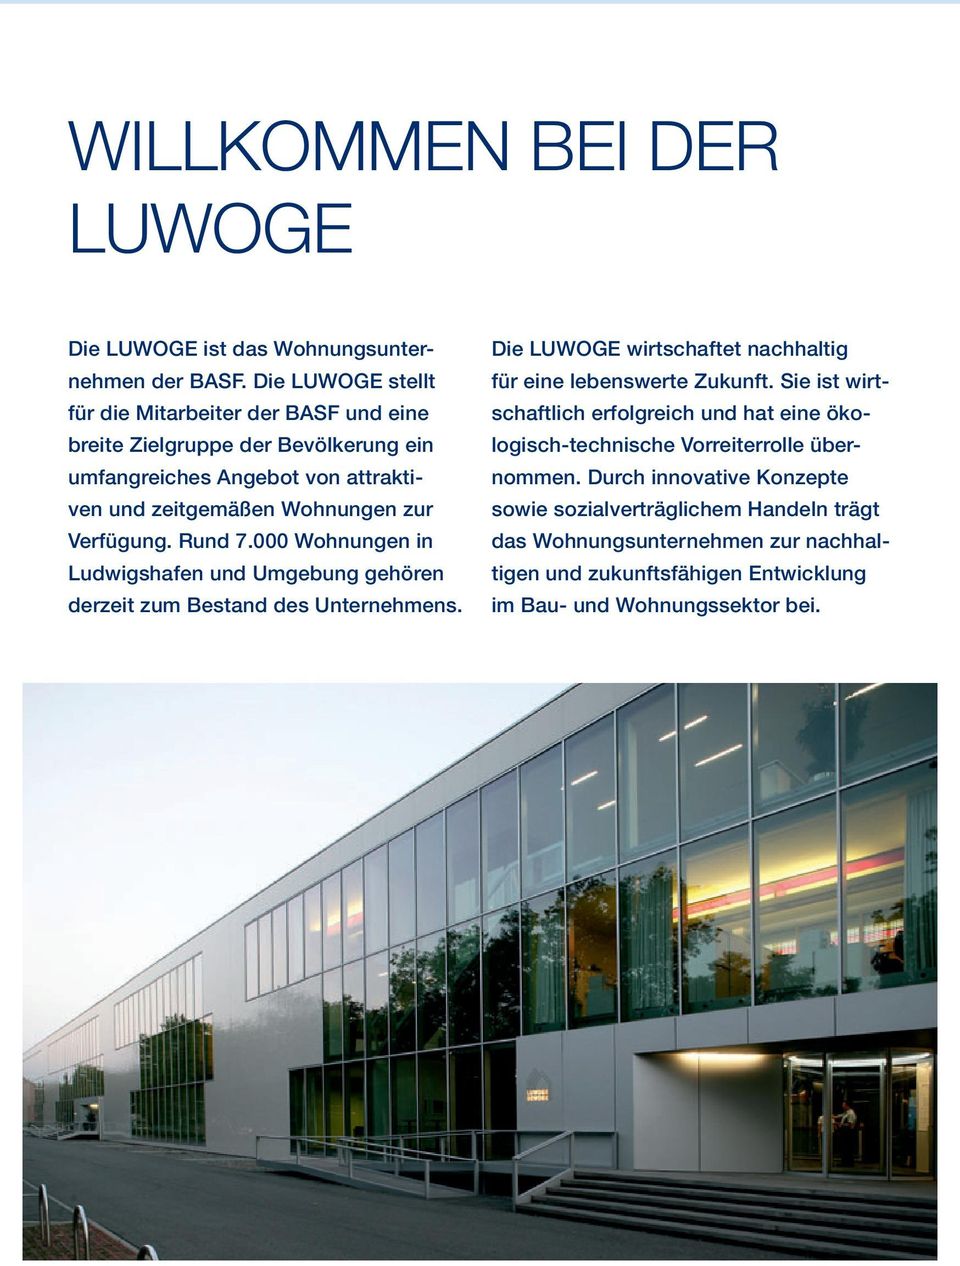 Verfügung. Rund 7.000 Wohnungen in Ludwigshafen und Umgebung gehören derzeit zum Bestand des Unternehmens.